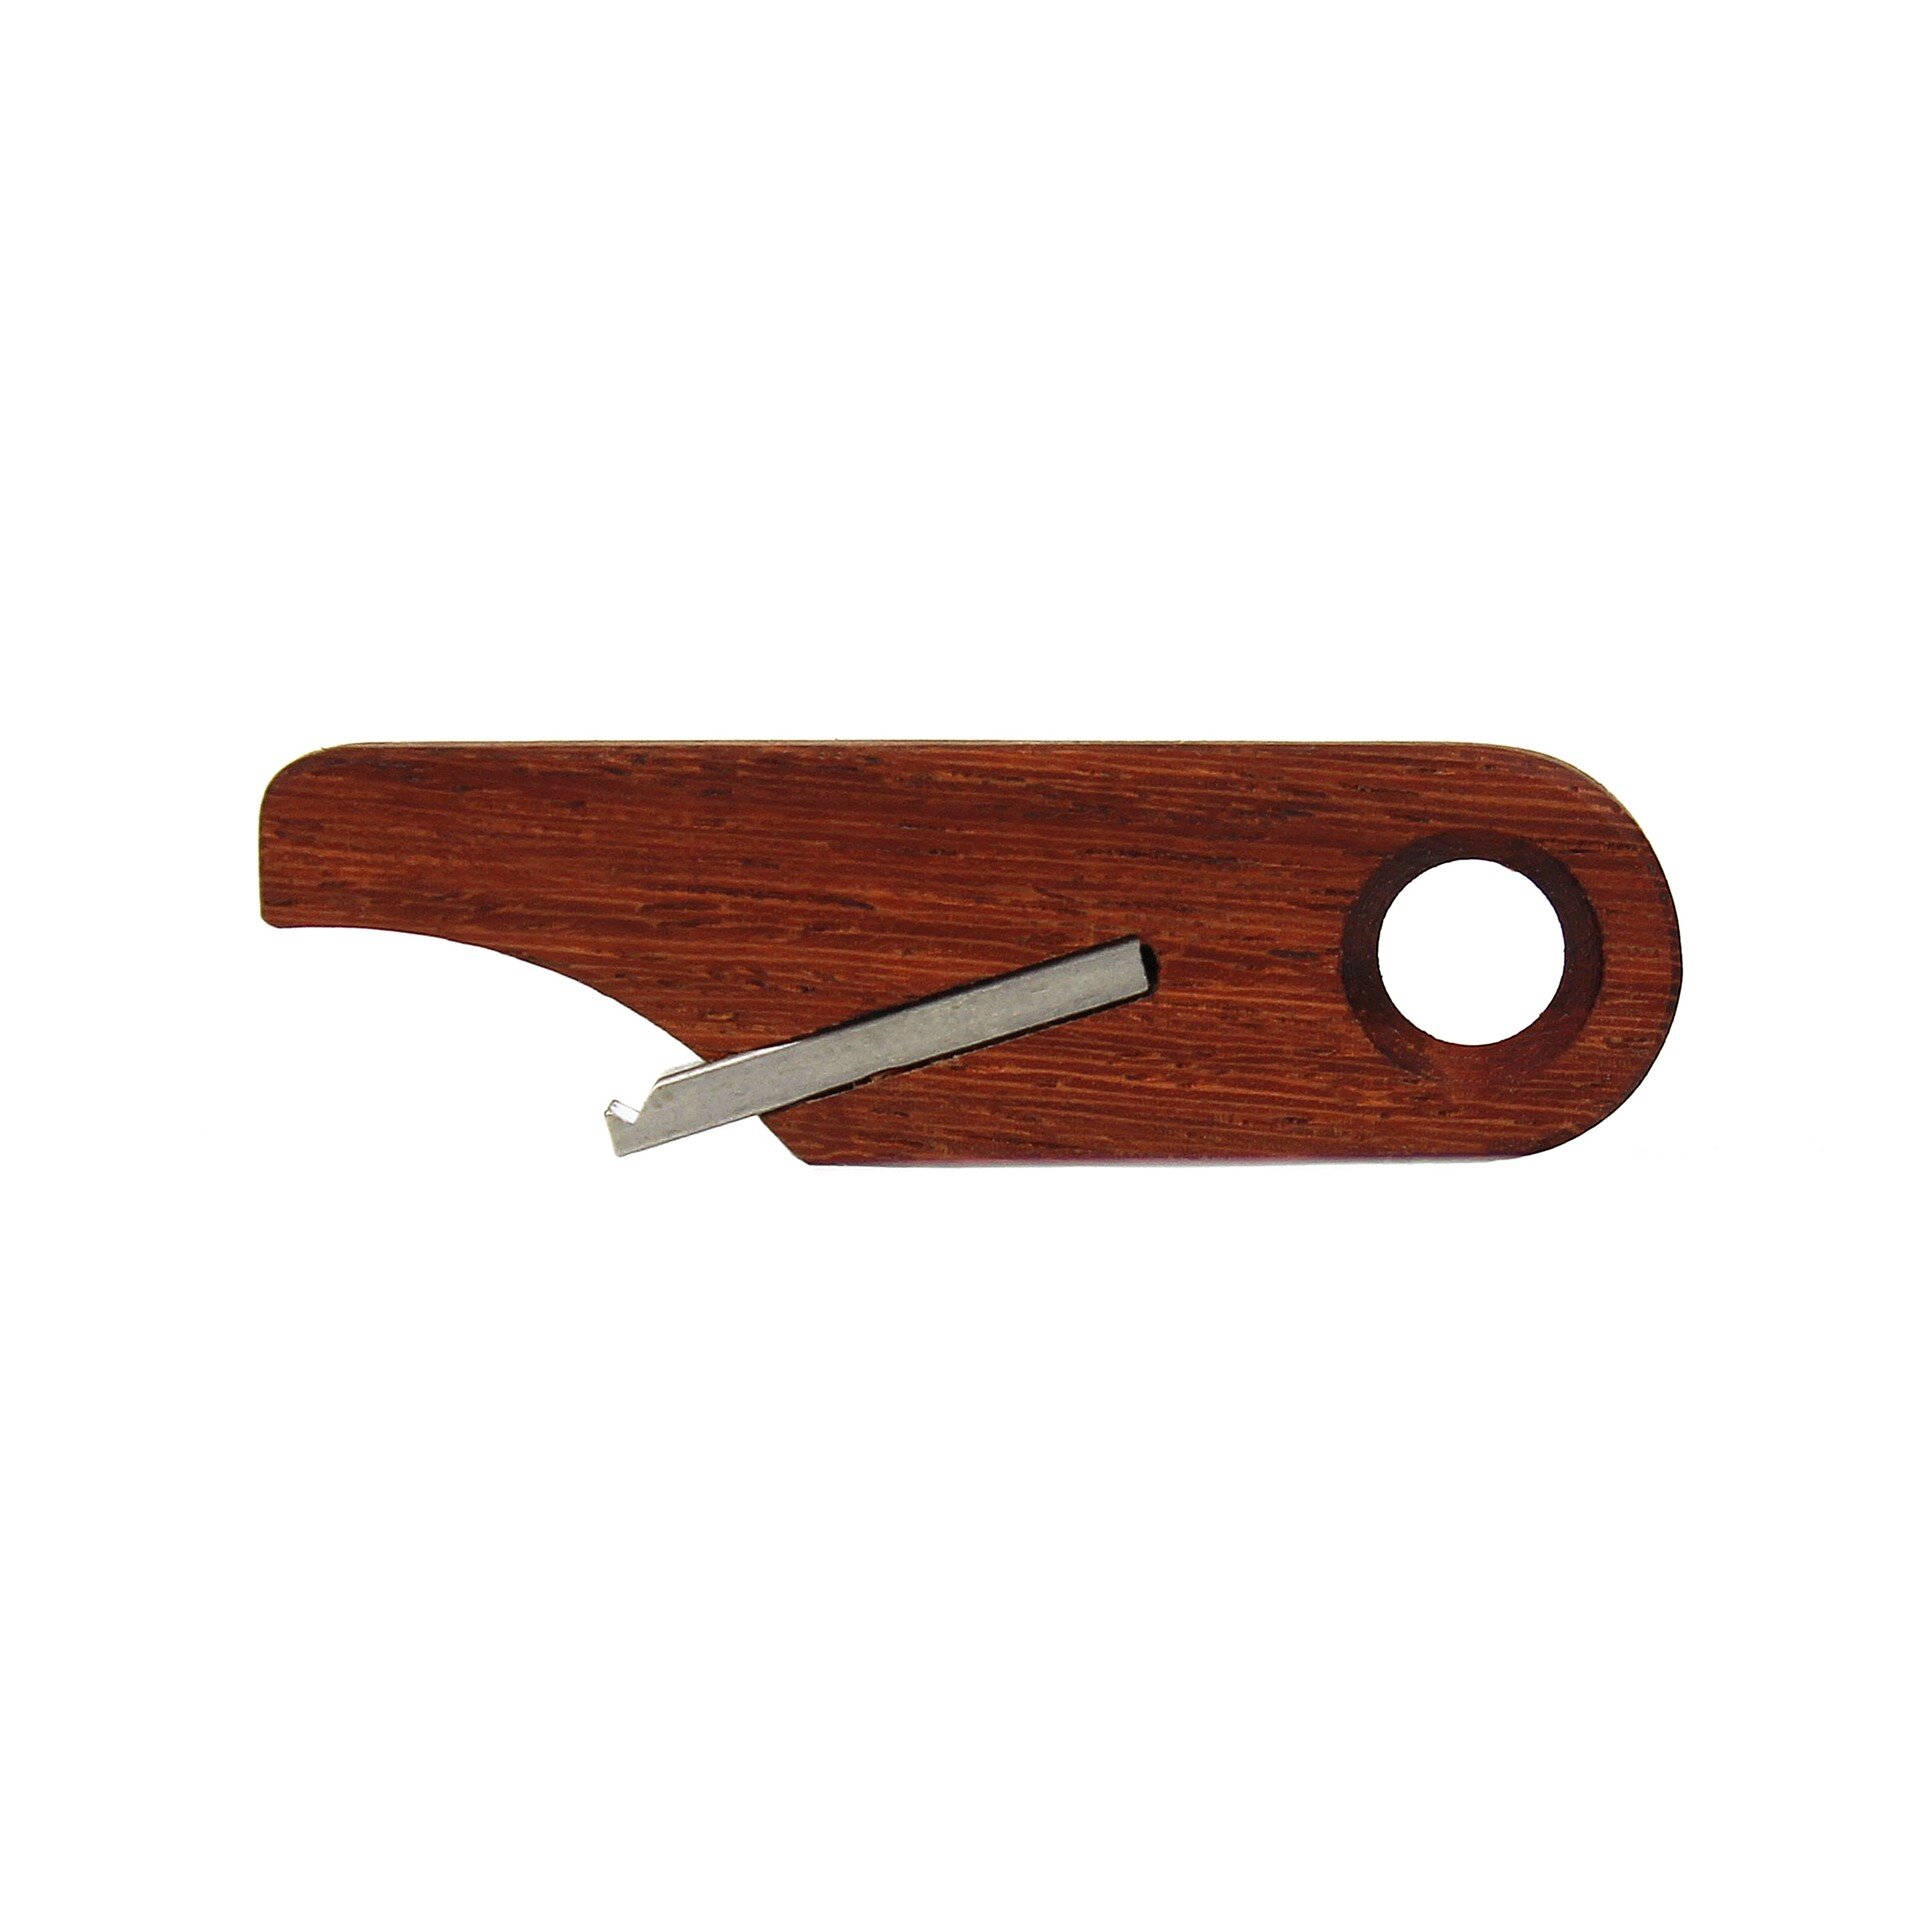 Wooden Bottle Opener Keychain by Rift Wood Company - Machiche.JPG